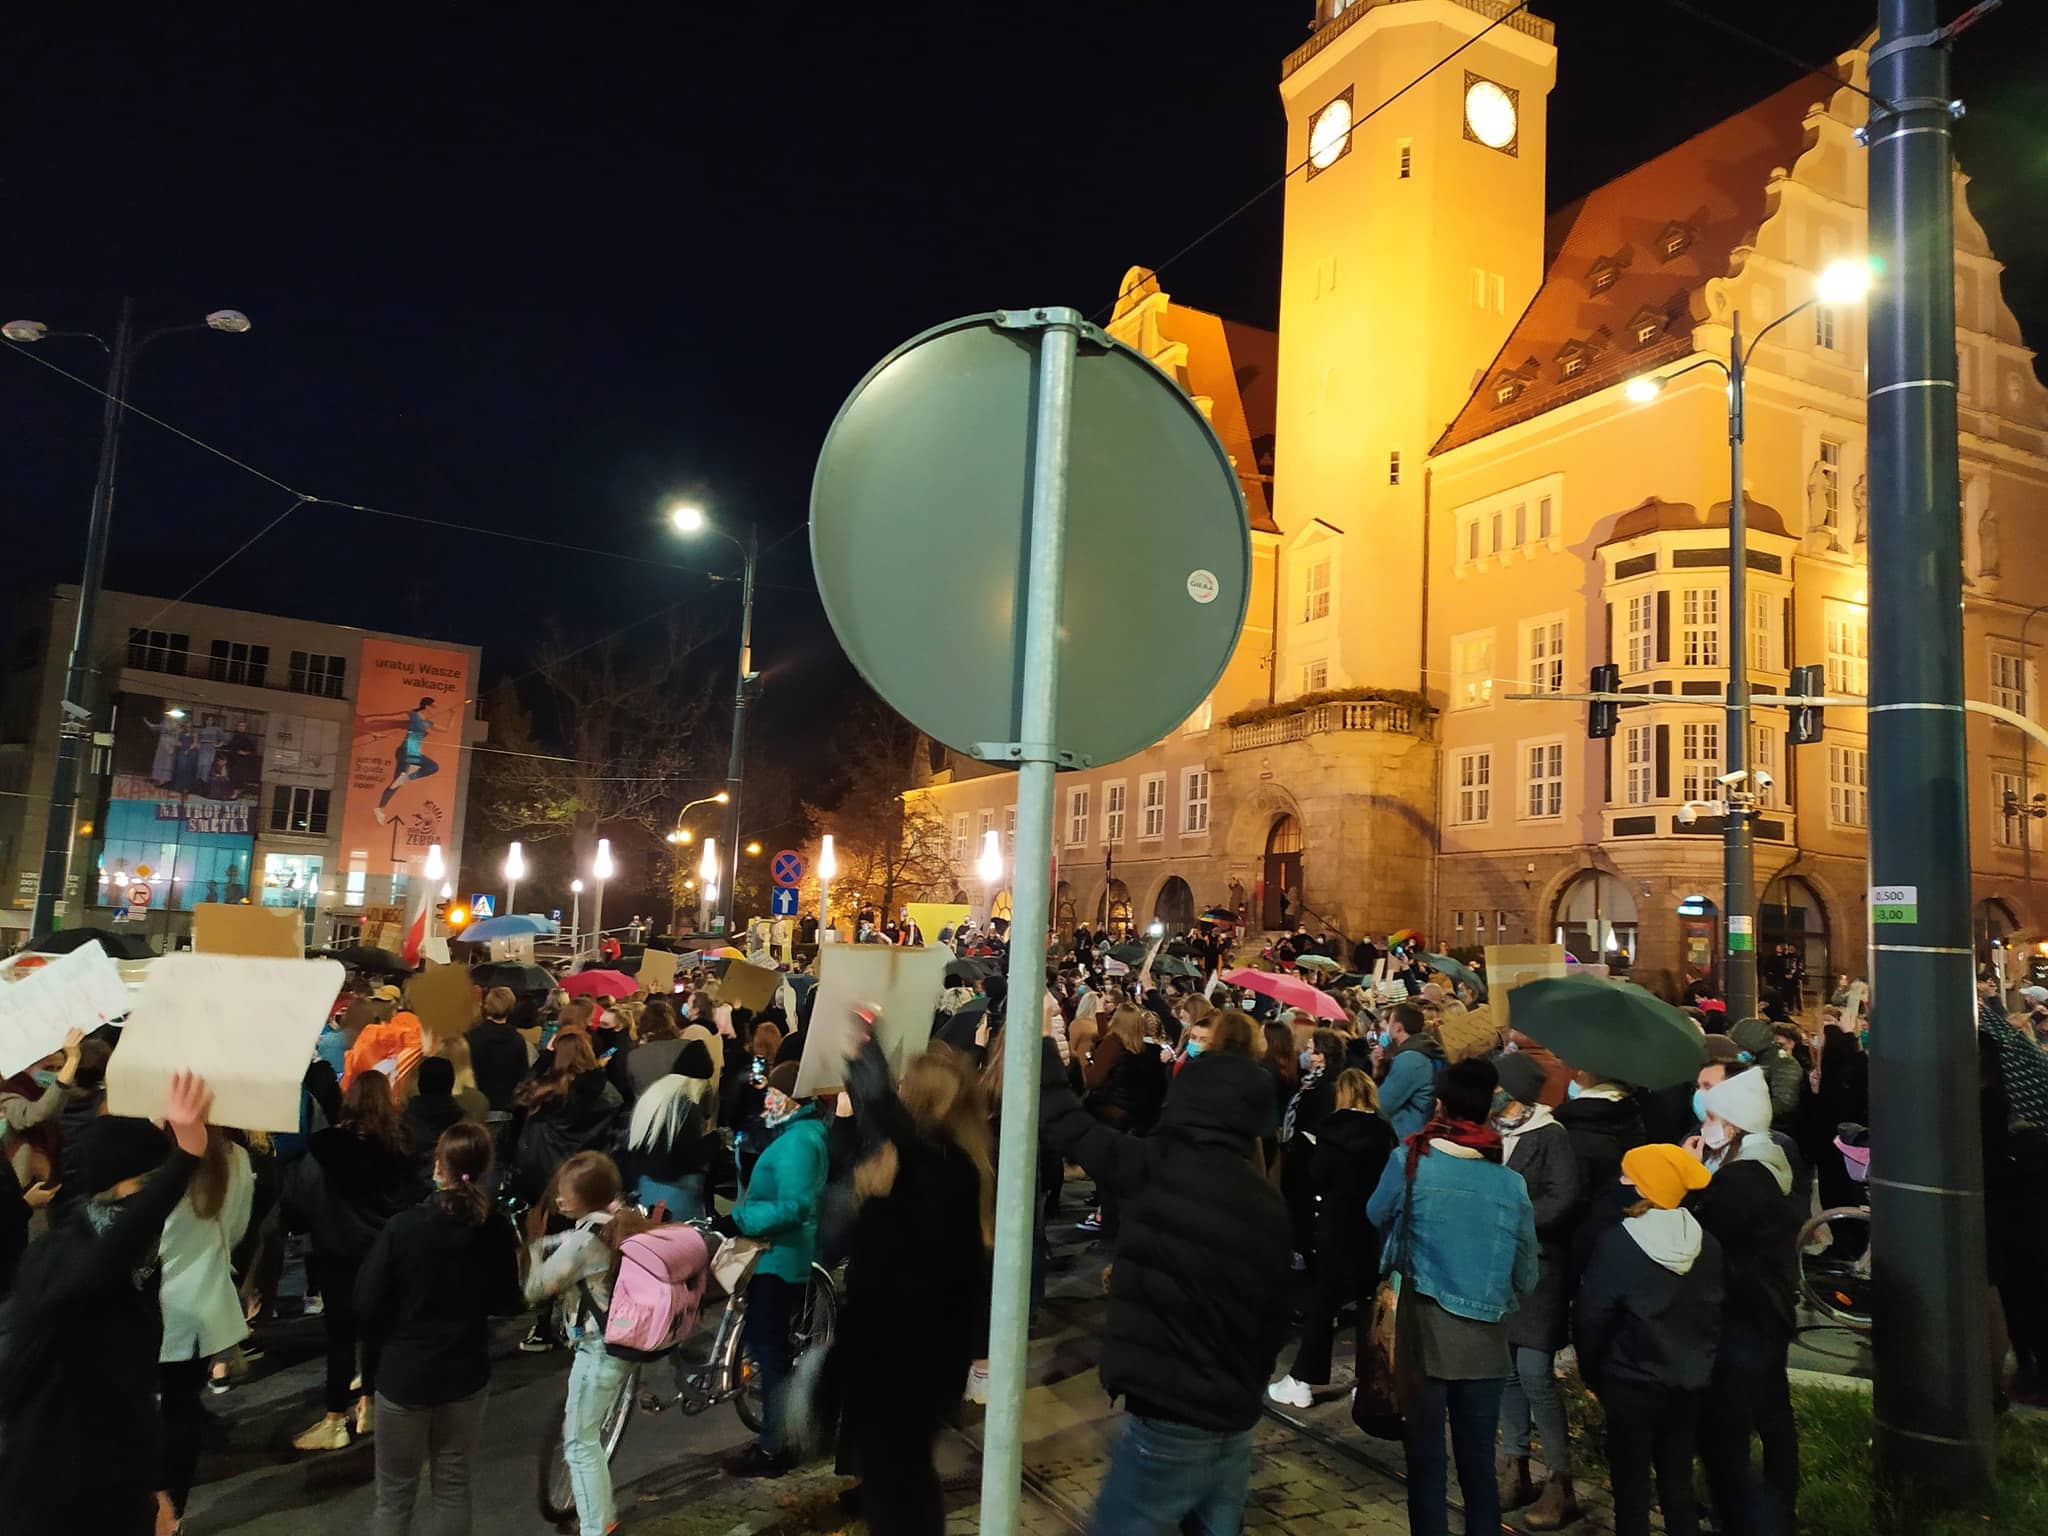 Kolejny dzień protestu. Tym razem kobiety zablokowały centrum Olsztyna w godzinach szczytu